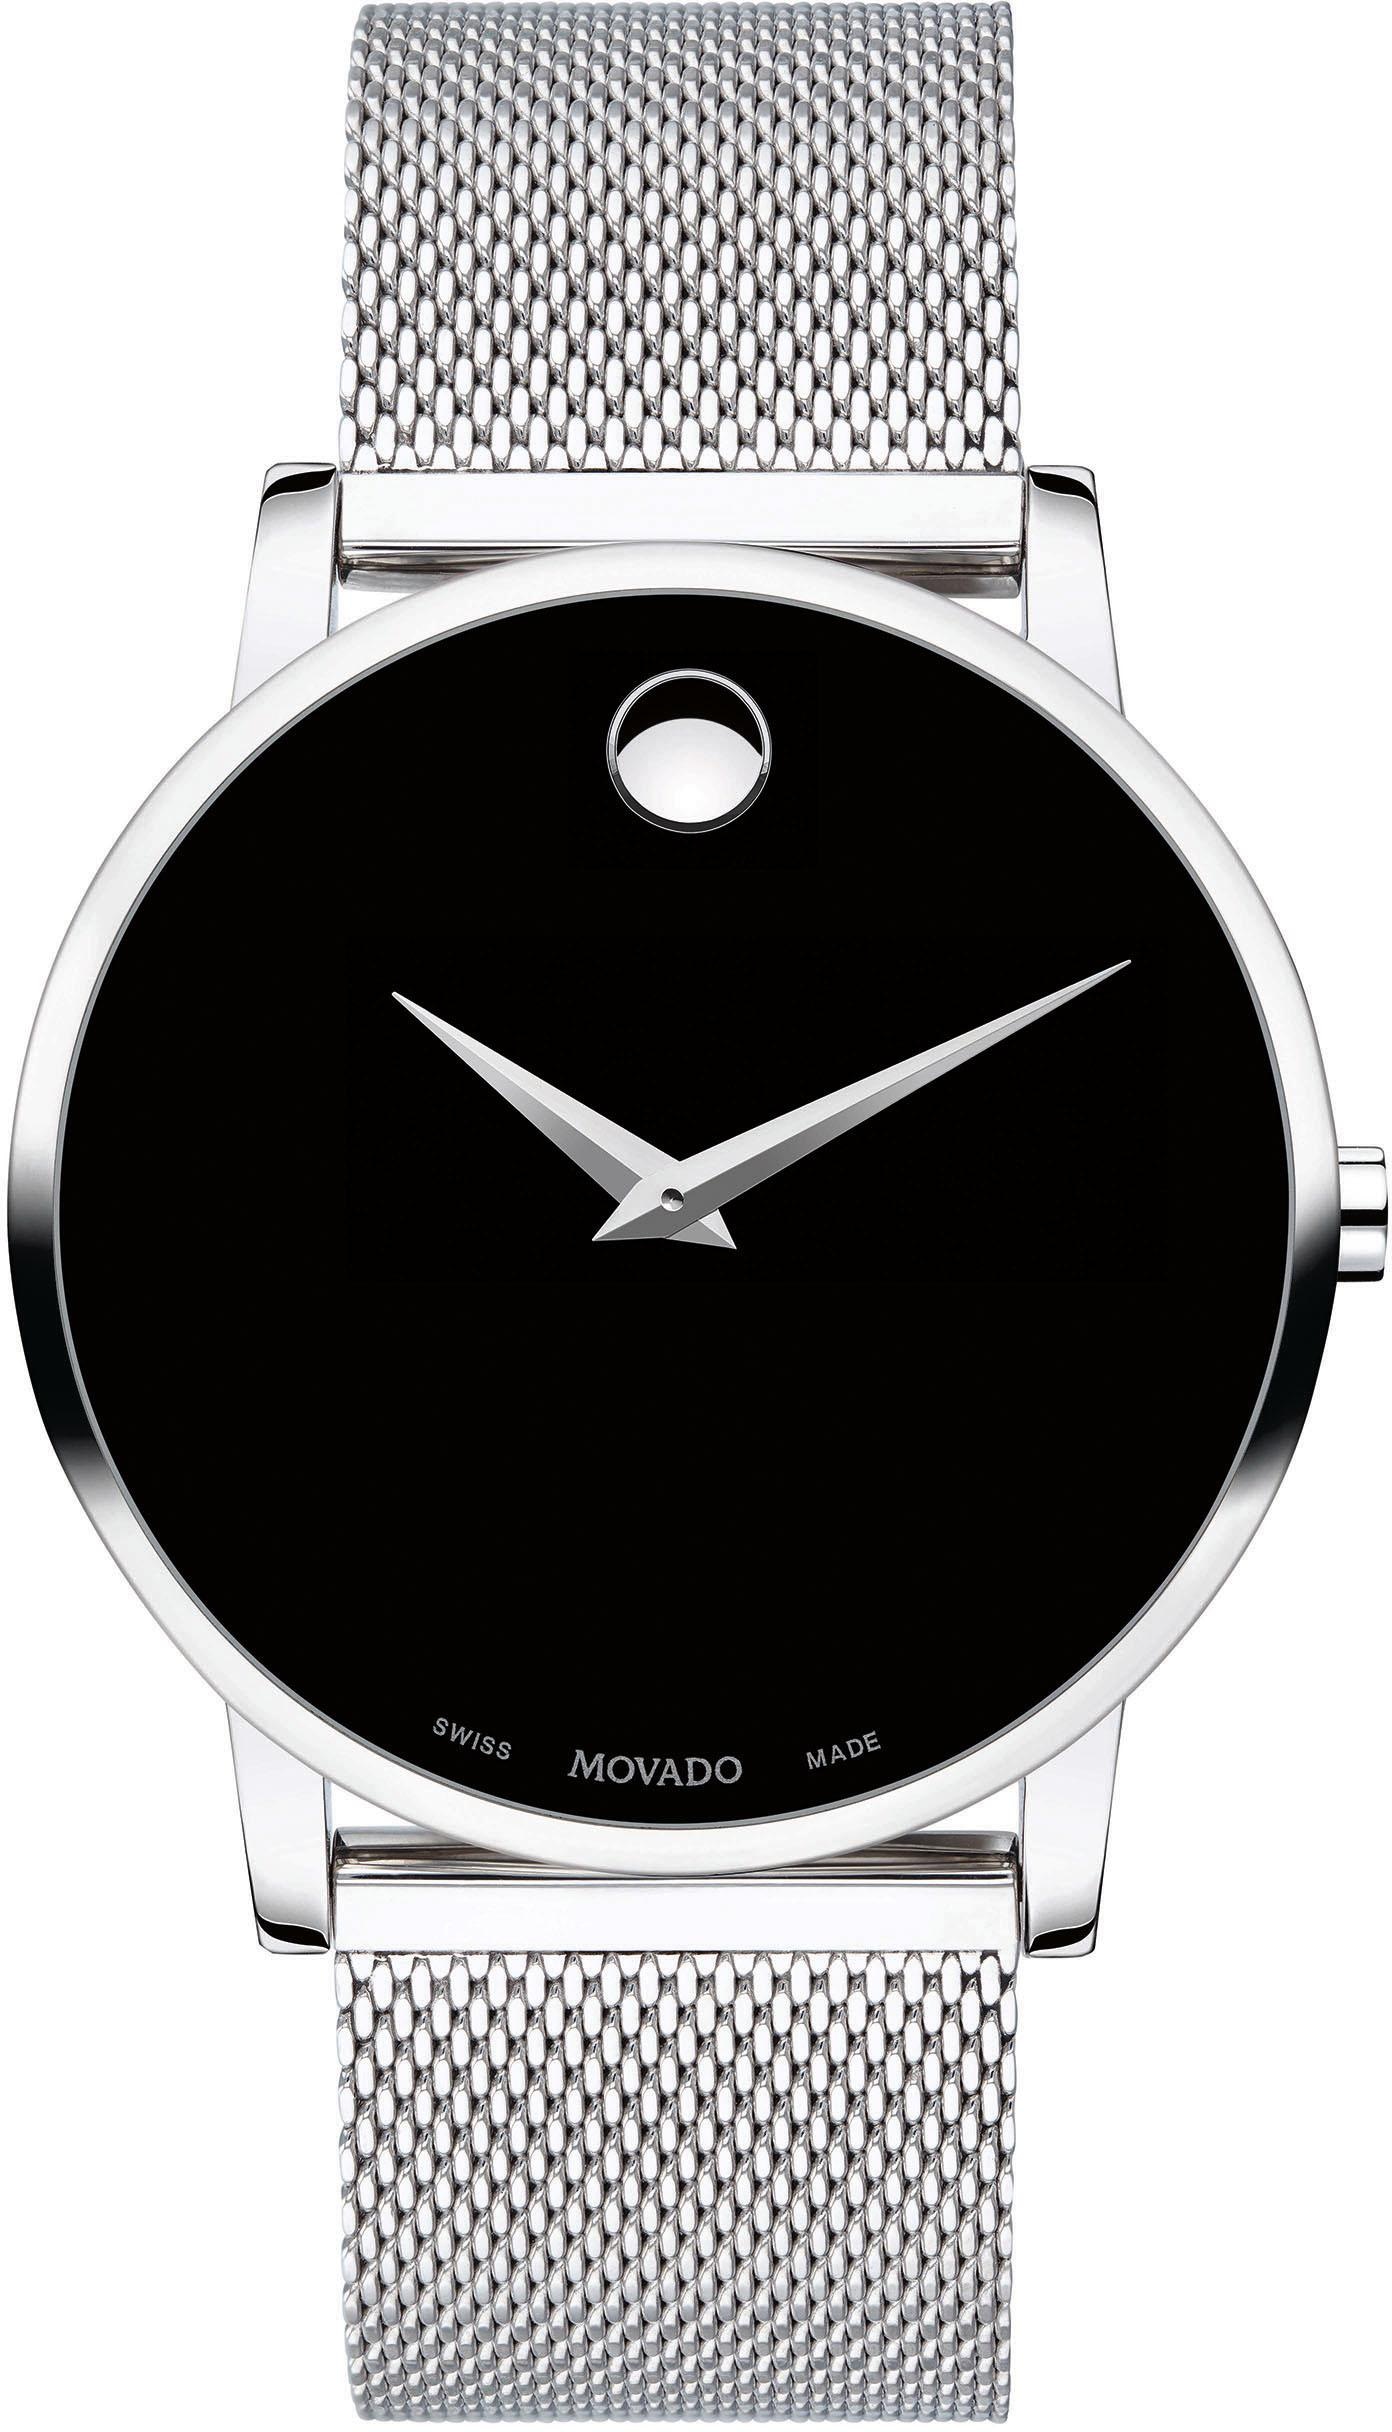 MOVADO Schweizer Uhr »MUSEUM, 607219« online kaufen bei OTTO